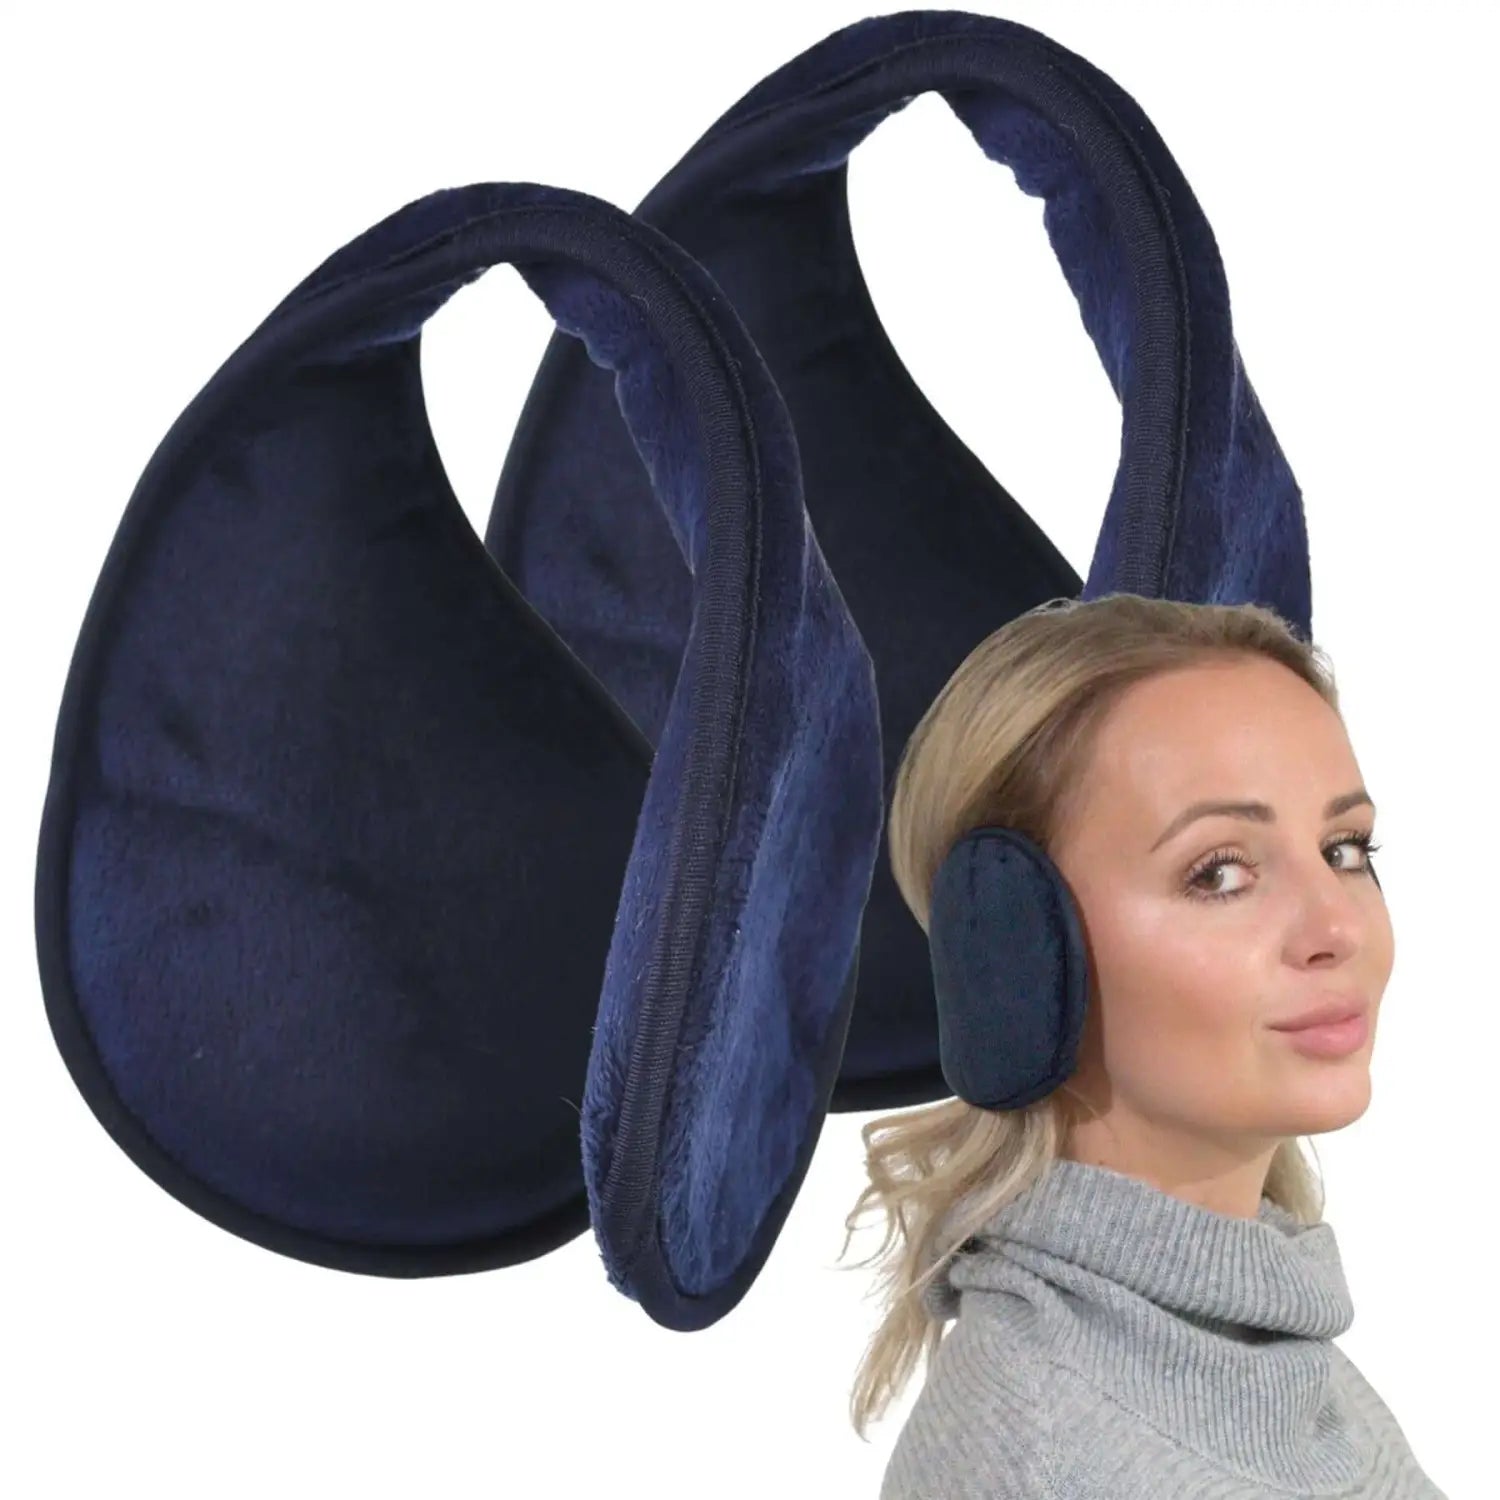 Extra wide winter ear muffs - woman wearing blue ear cushion